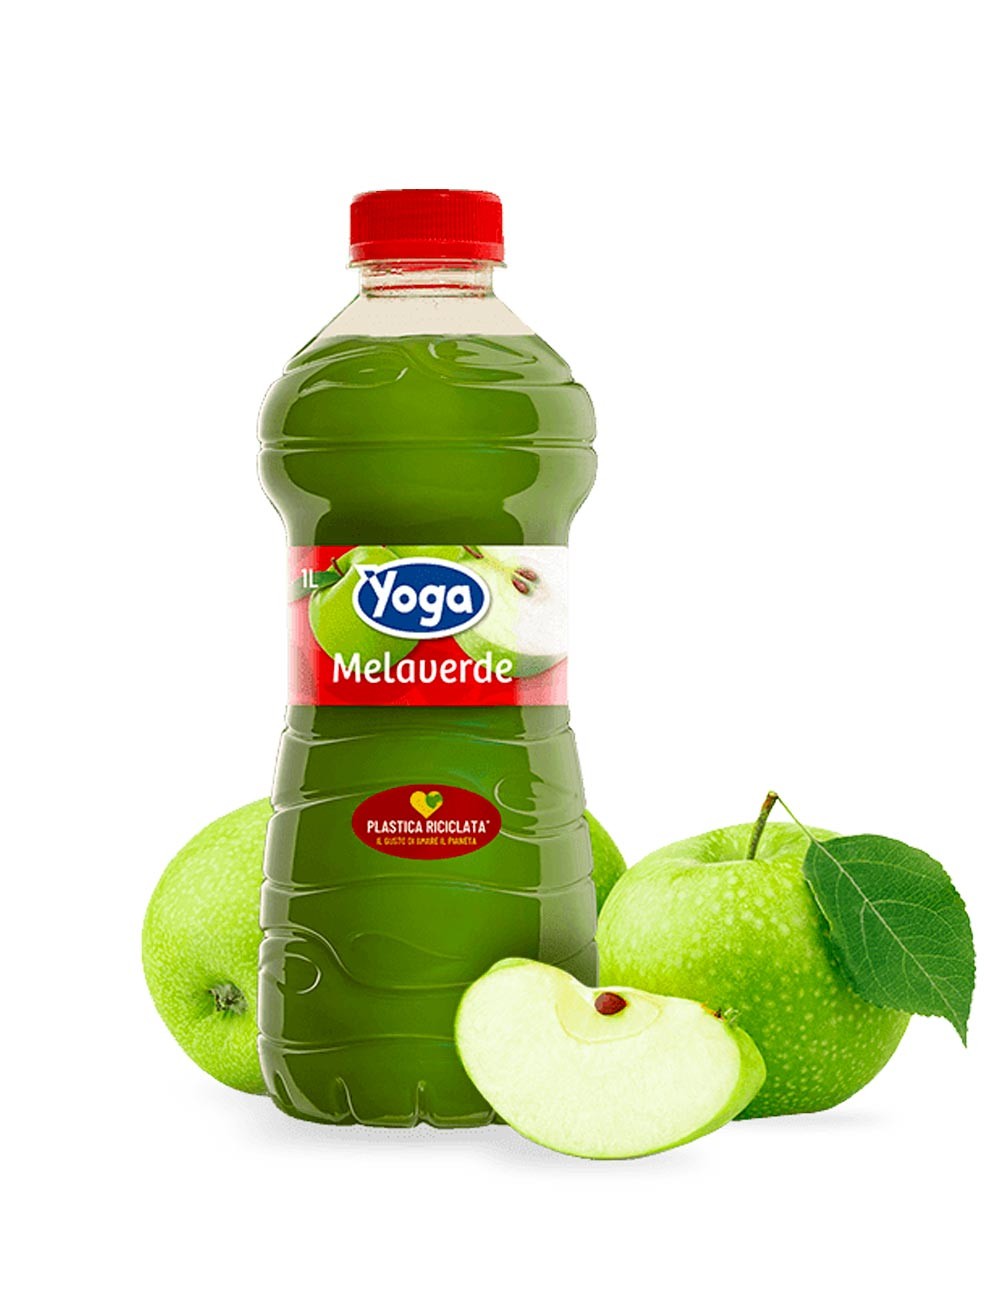 Grüner Apfel Yoga Saft 6 ab Stk. 1L